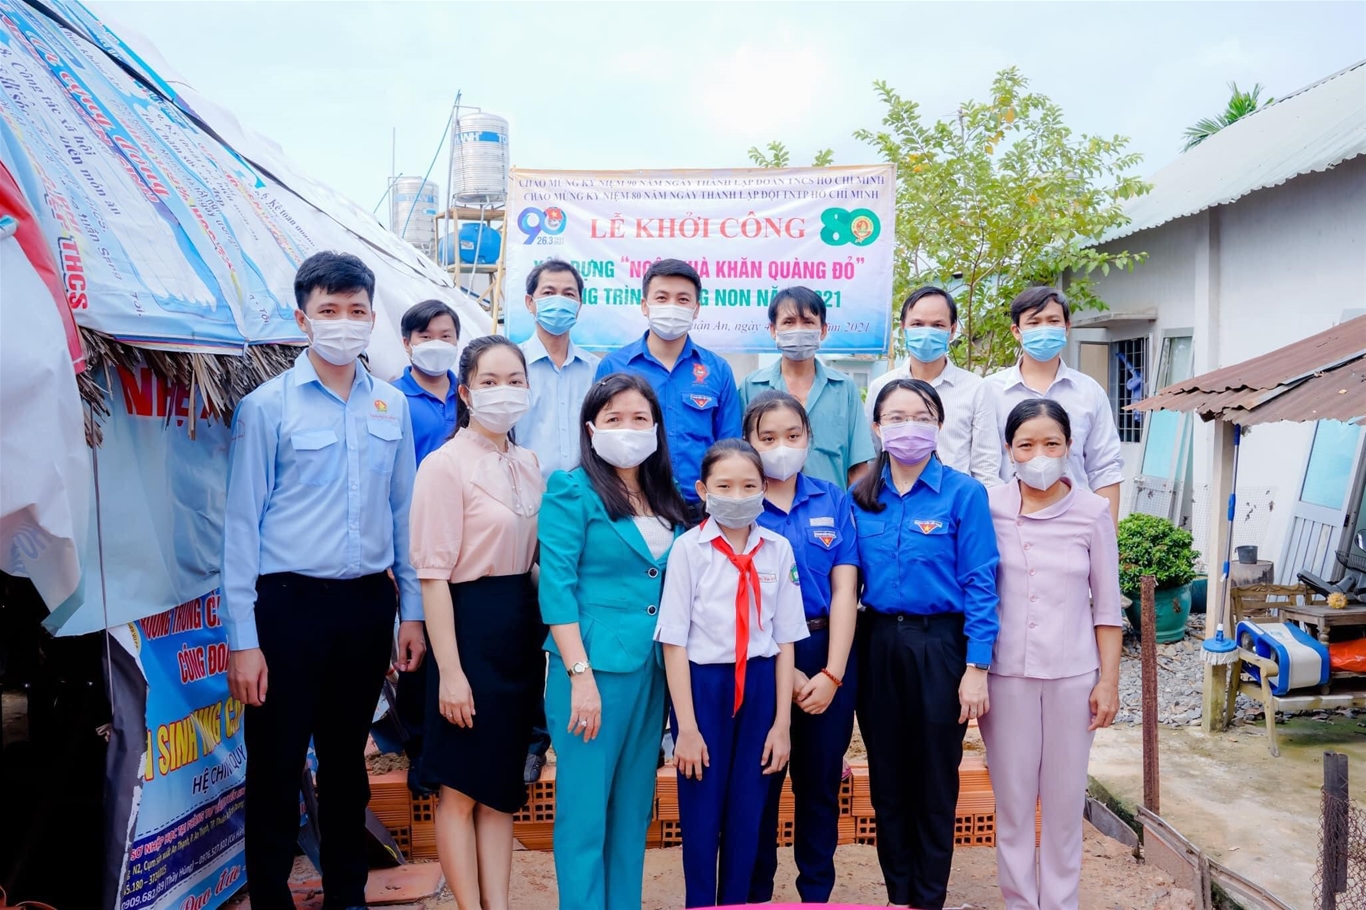 Khởi công xây dựng "Ngôi nhà khăn quàng đỏ" tại thành phố Thuận An